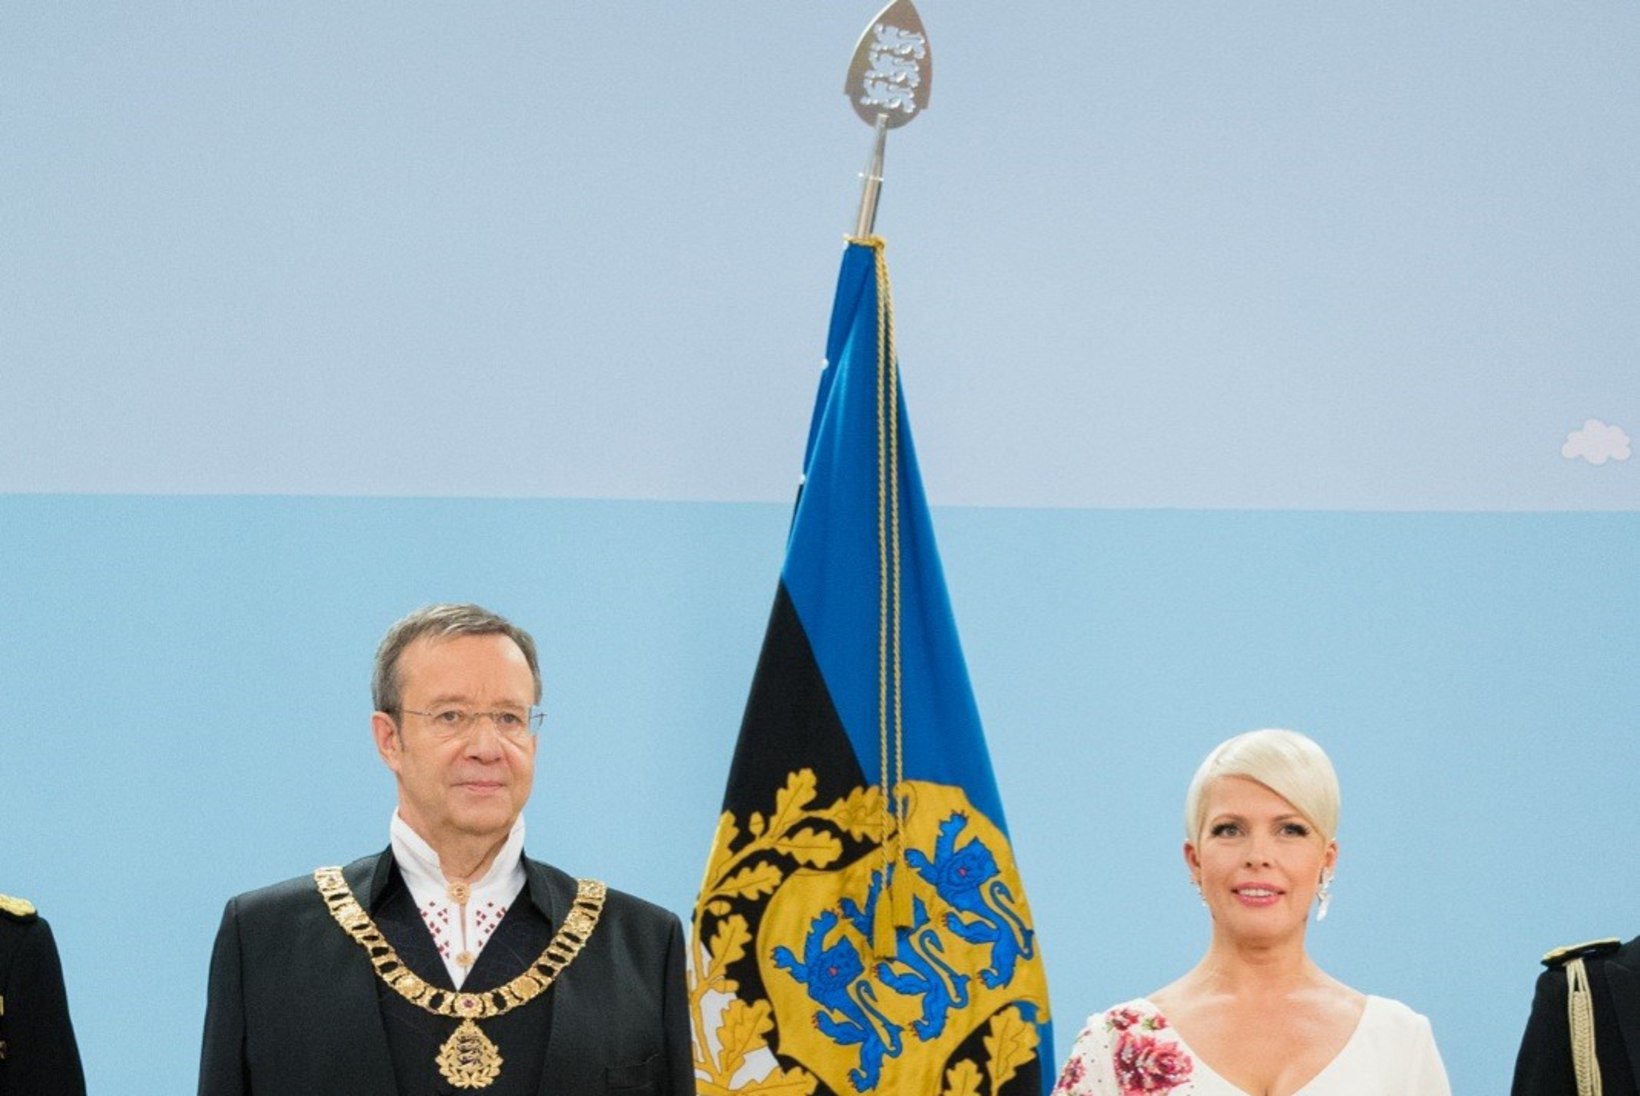 Kas Ieva Kupce tervitab vabariigi aastapäeval külalisi Läti rahvariietes? Või disainerikleidis?